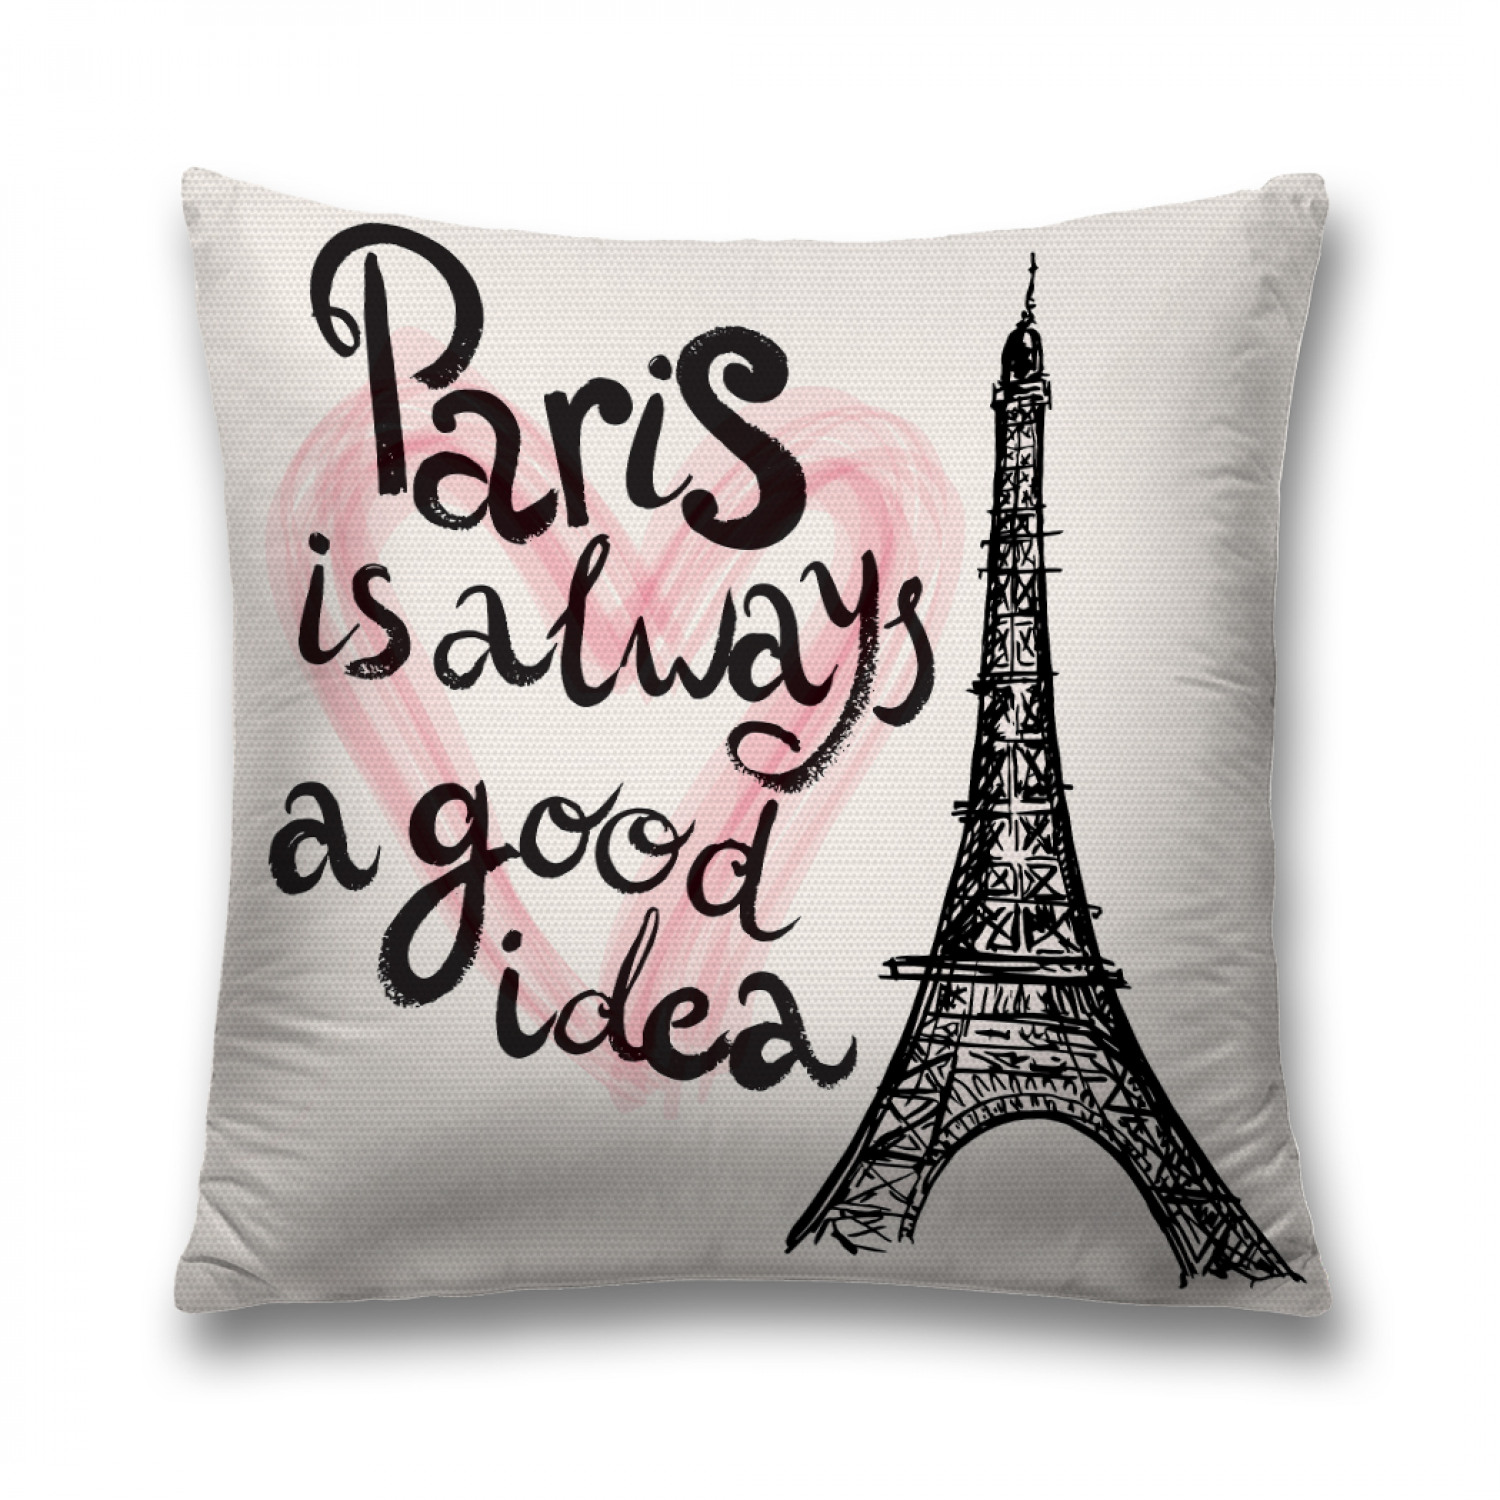 Париж всегда хорошая. Париж всегда хорошая иде. Париж - всегда хорошая идея.